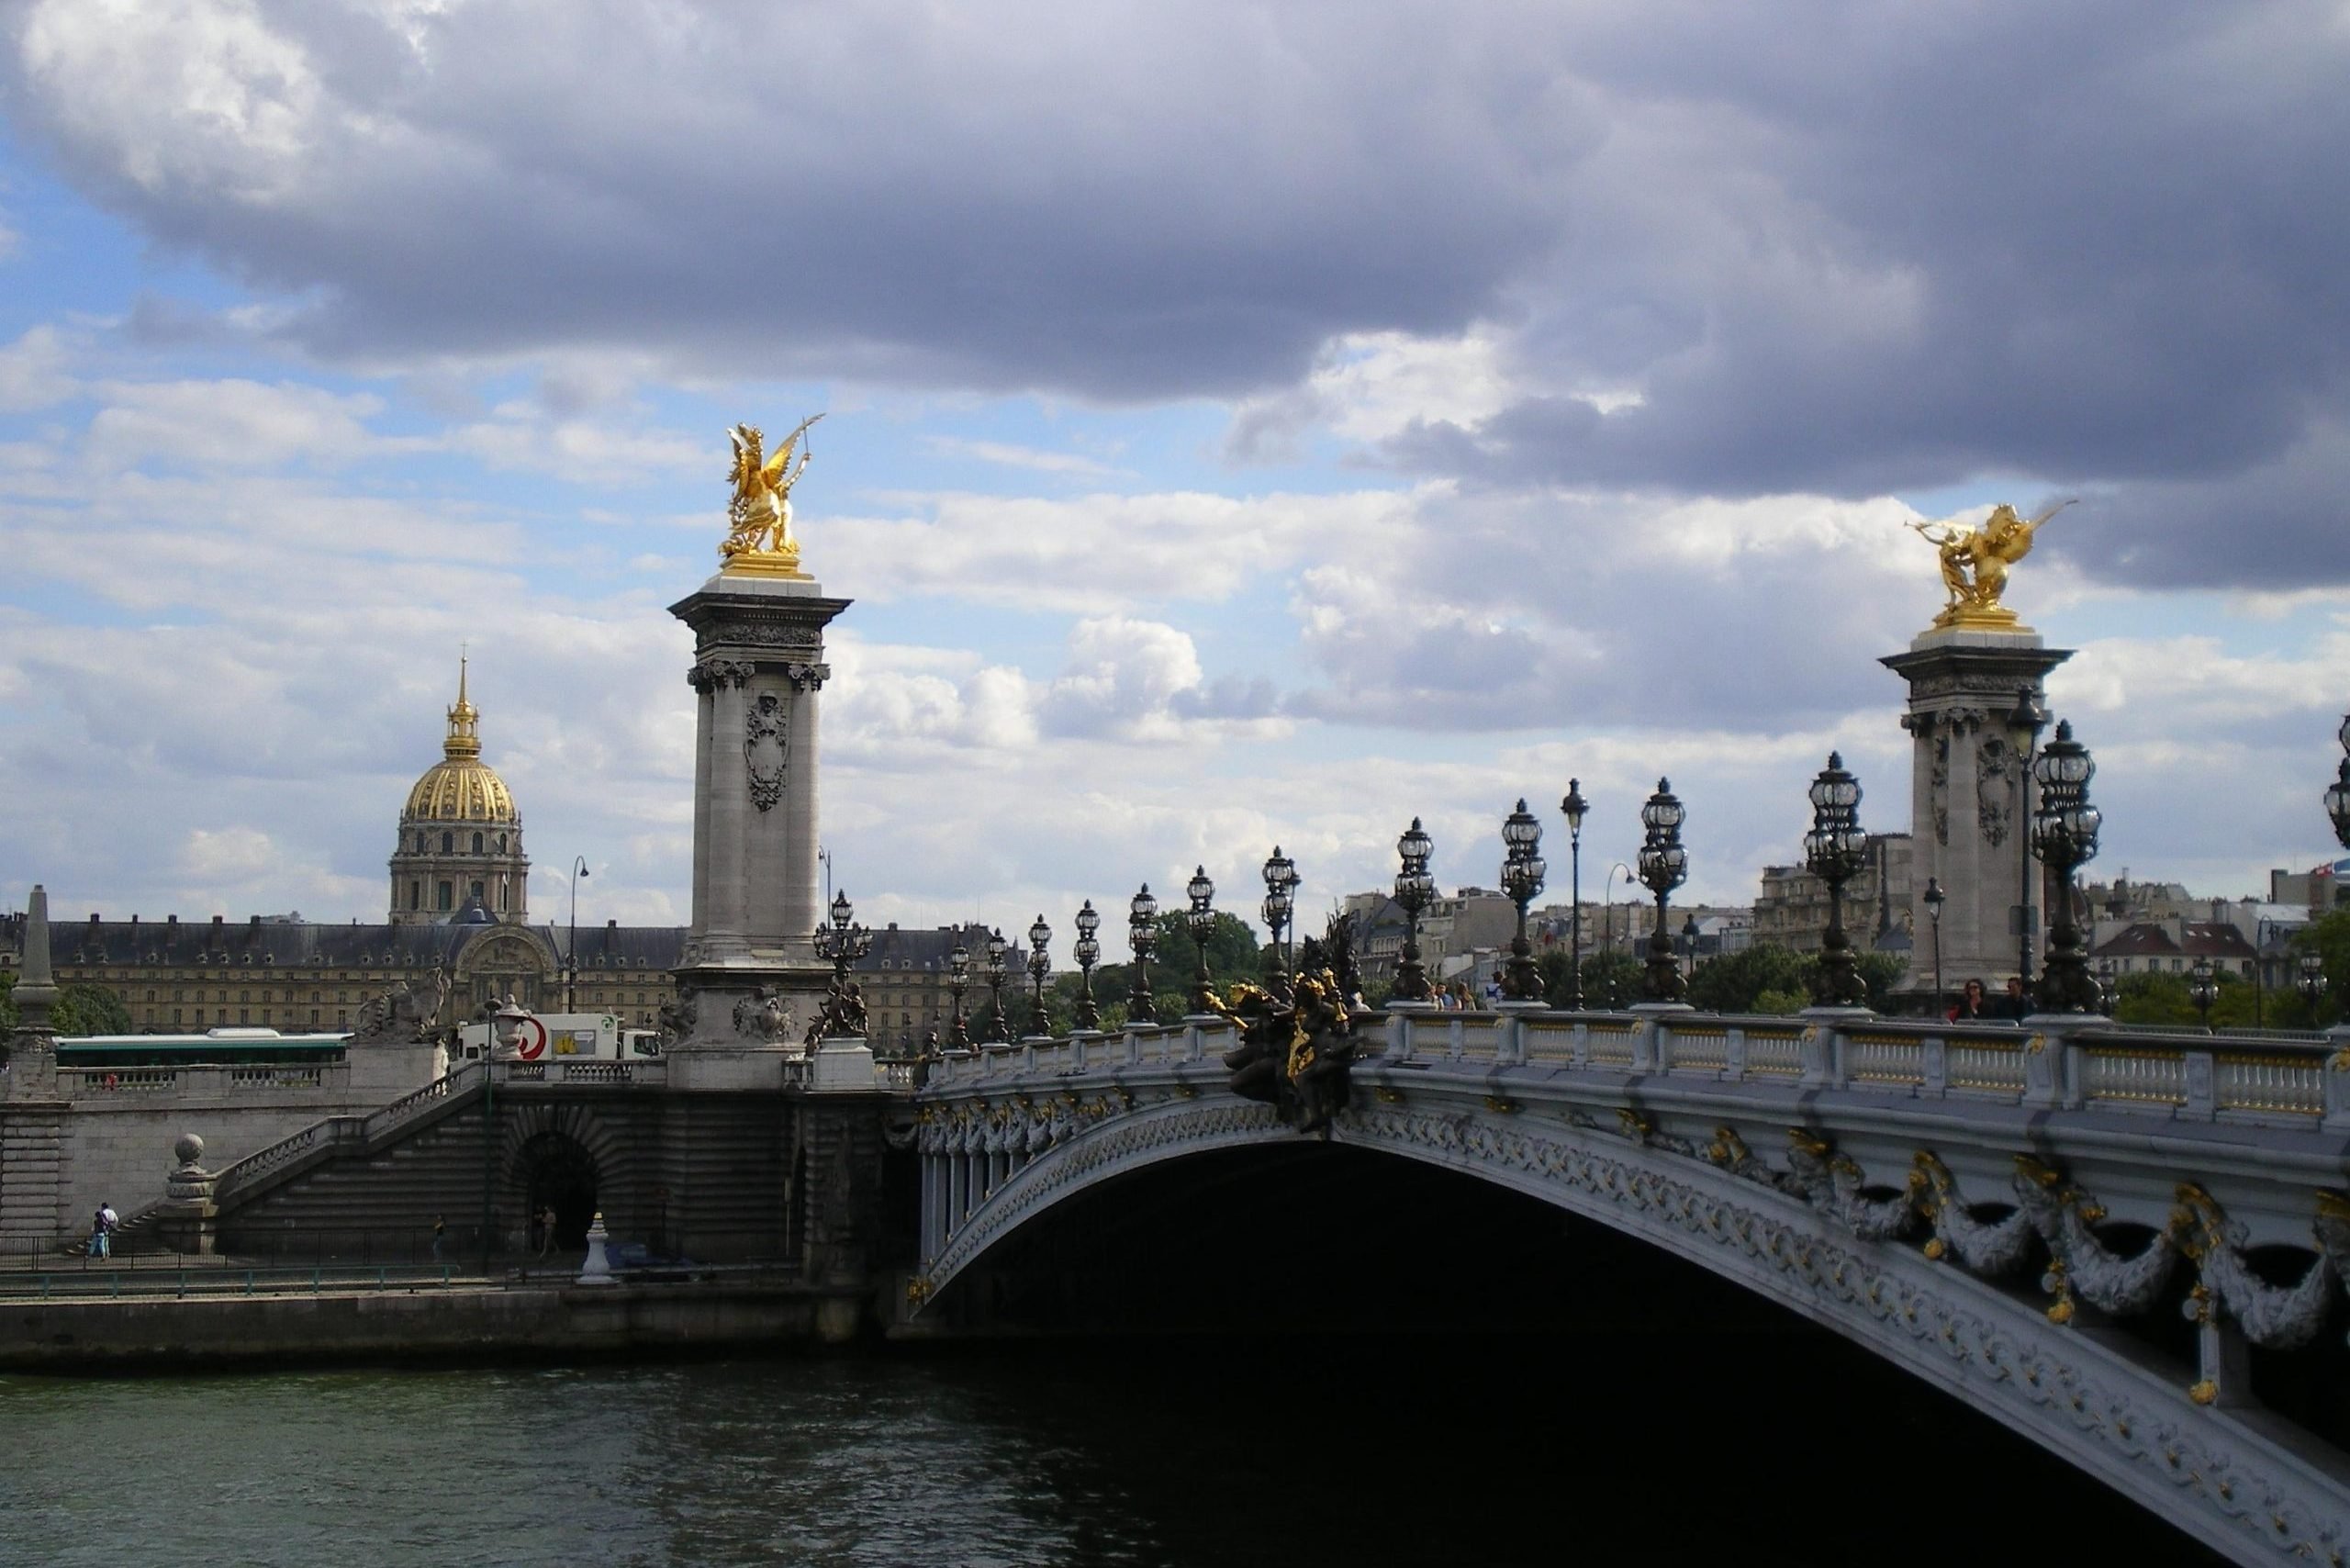 Հայաստանի անունով անվանակոչվեց Փարիզի սրտում գտնվող Ալմայի և Էնվալիդների կամուրջների միջև ընկած, Սենա գետին հարող ընդարձակ տարածքը․ Տեսանյութ